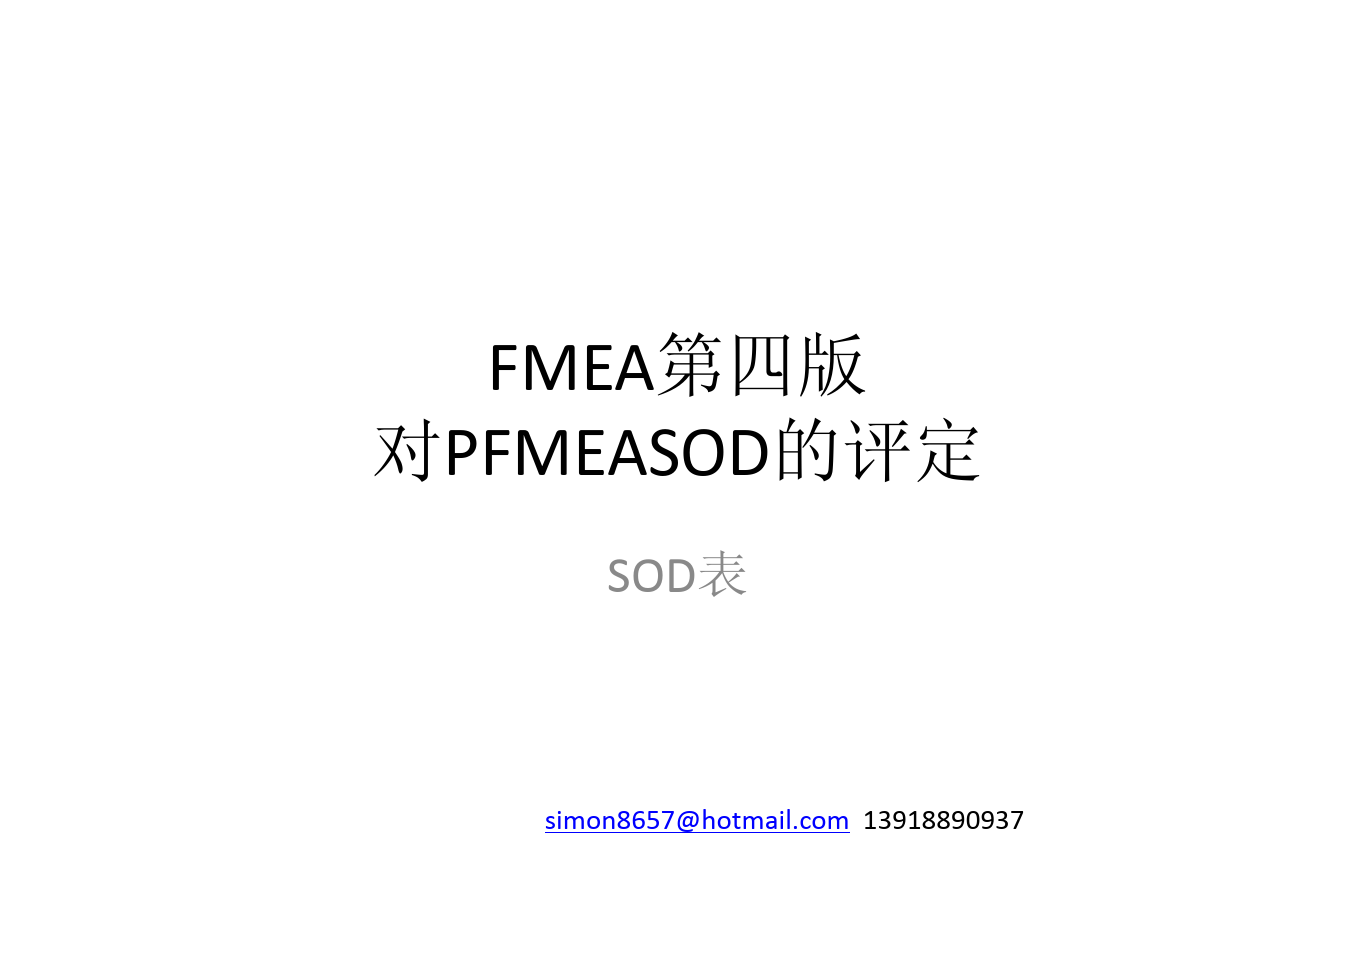 FMEA-4th SOD评分标准